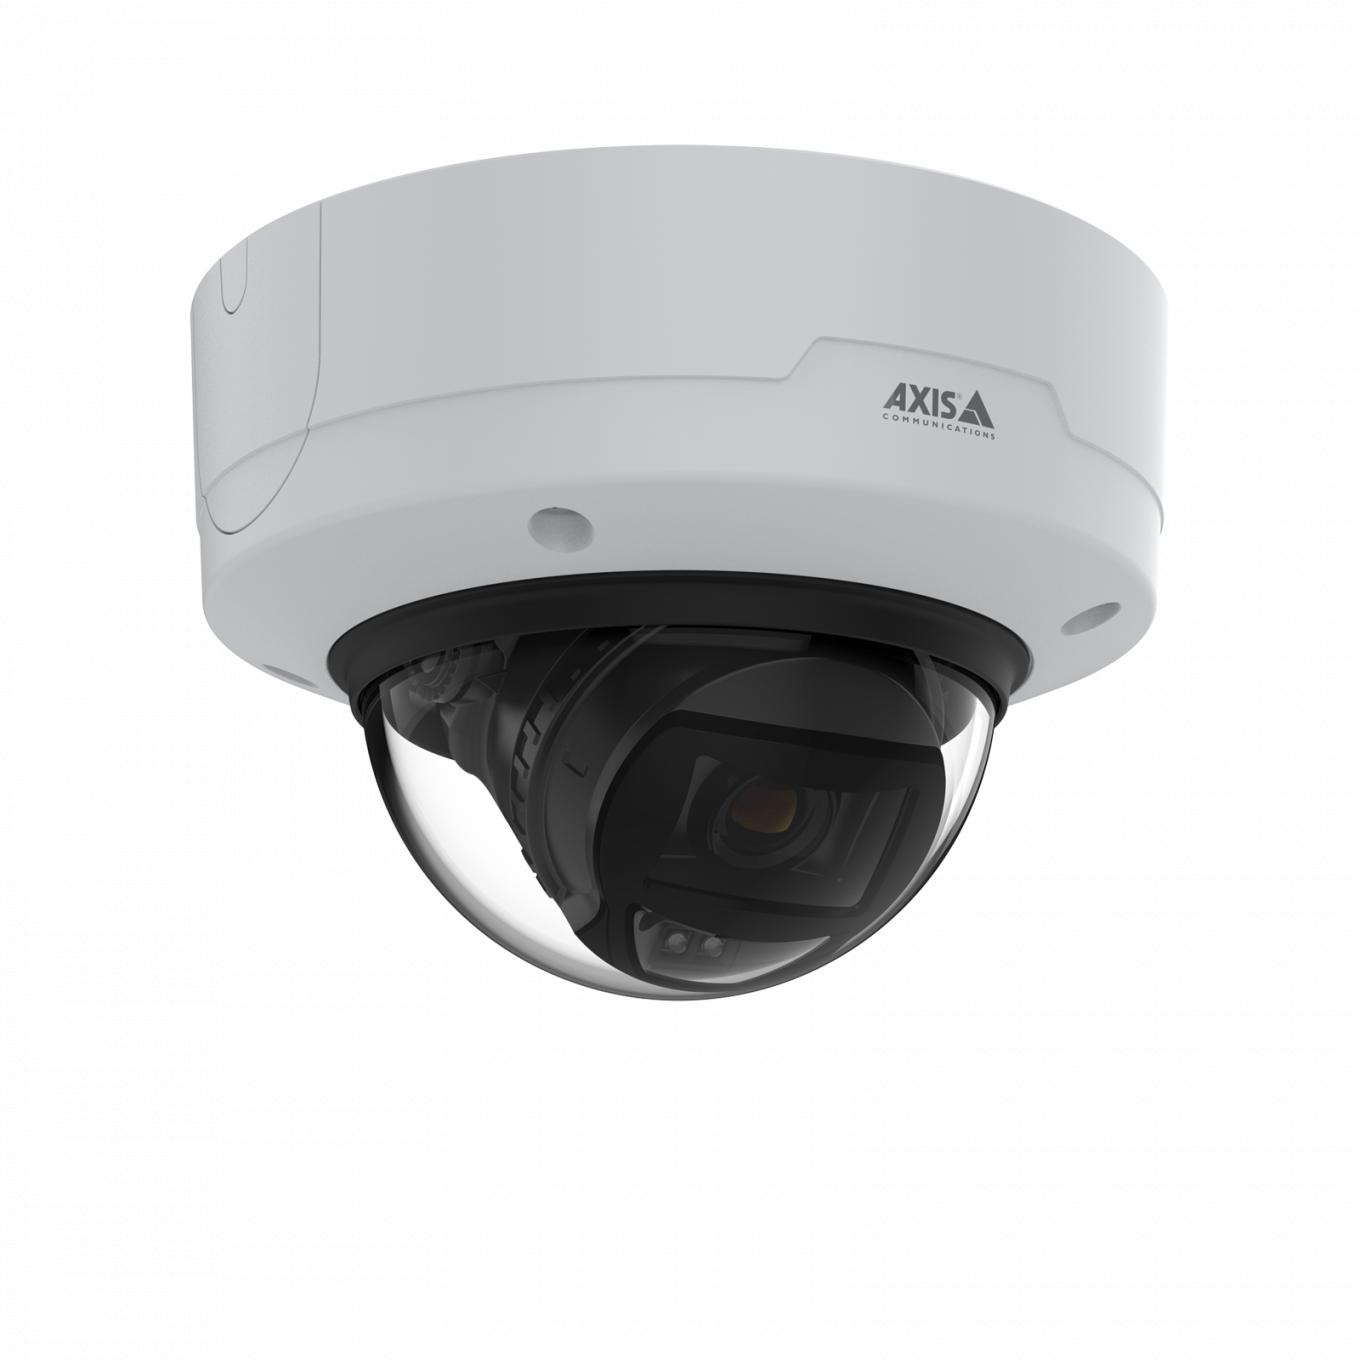 AXIS P3265-LVE Dome Camera zamontowana na suficie — widok z prawej